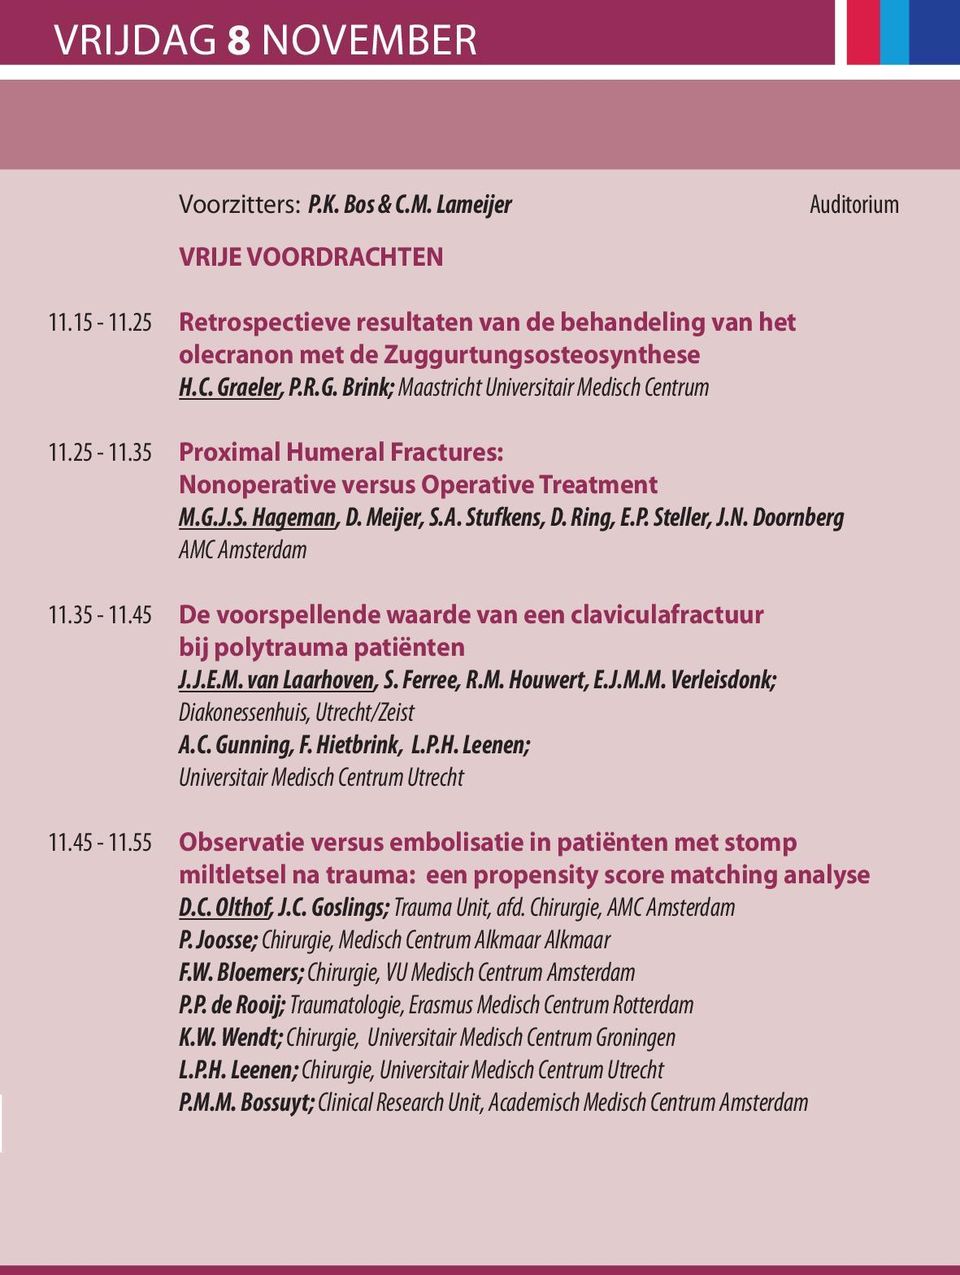 N. Doornberg AMC Amsterdam 11.35-11.45 de voorspellende waarde van een claviculafractuur bij polytrauma patiënten J.J.E.M. van Laarhoven, S. Ferree, R.M. Houwert, E.J.M.M. Verleisdonk; Diakonessenhuis, Utrecht/Zeist A.